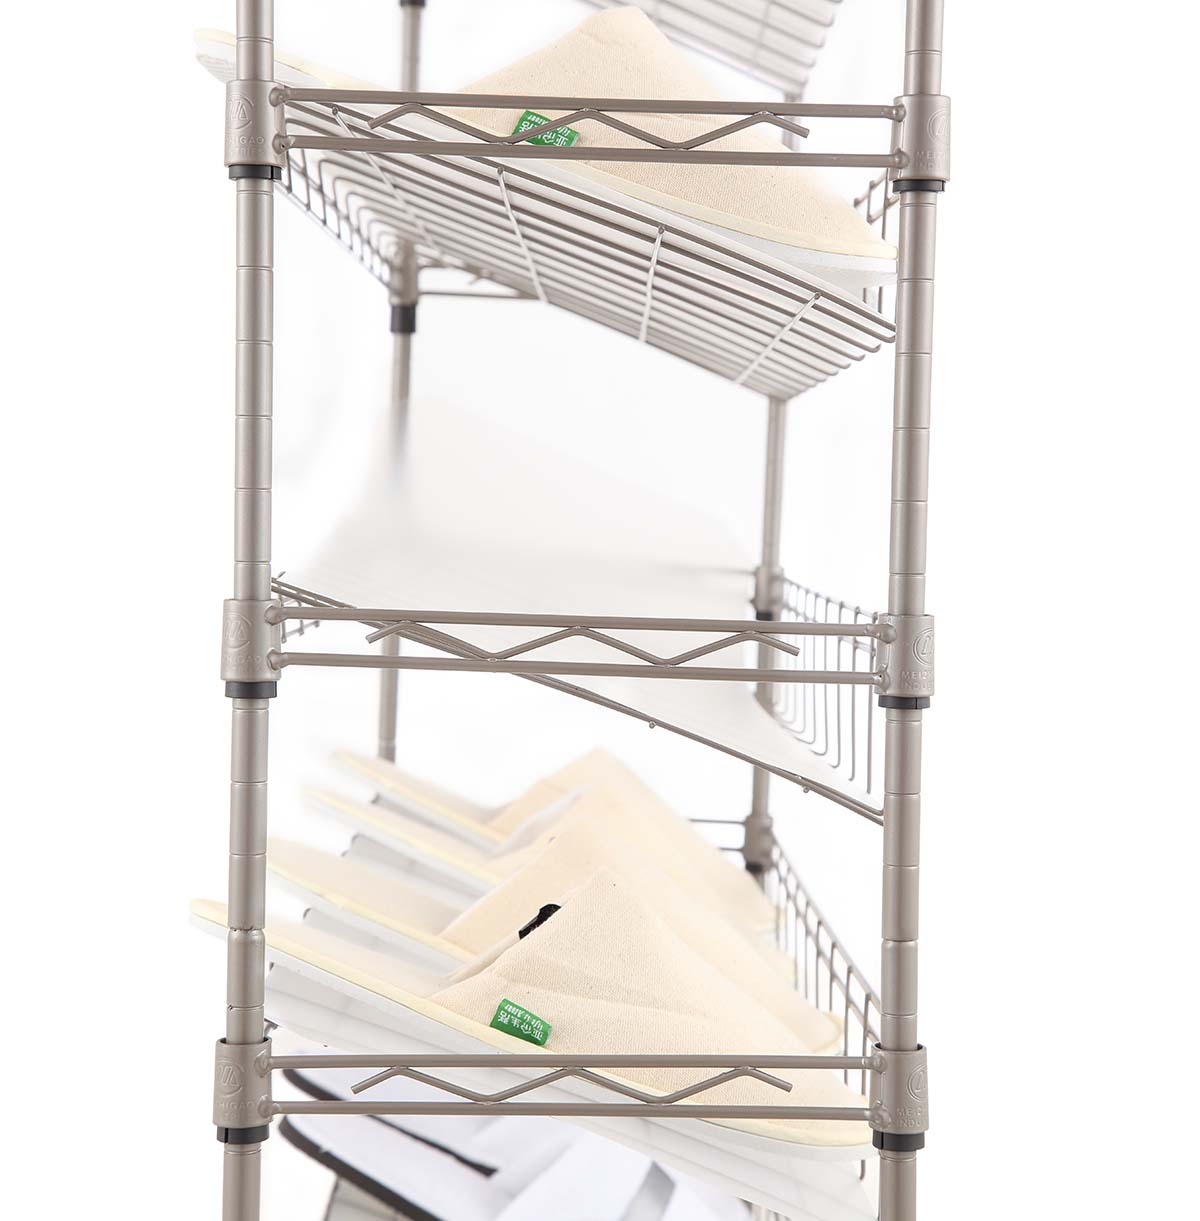 4-shelf wire storage rack custom